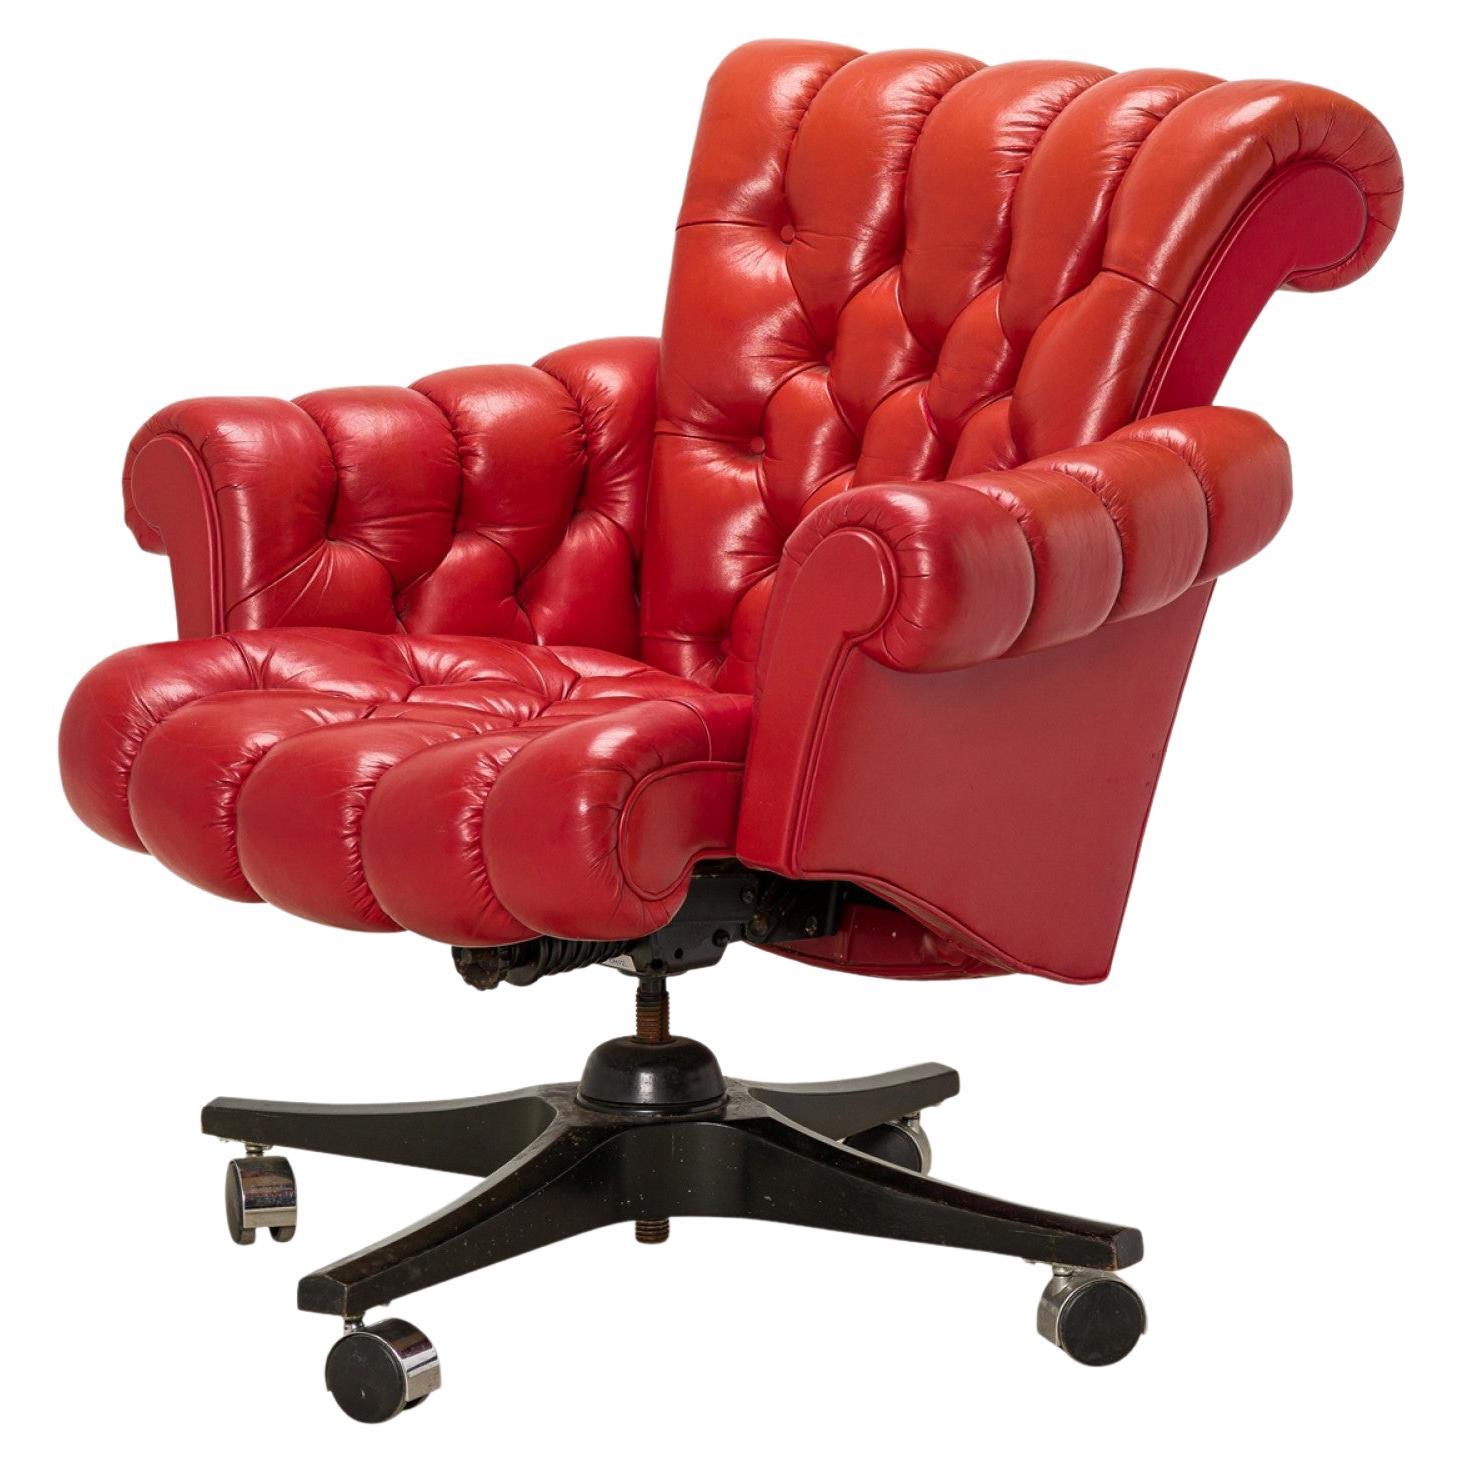 Chaise de bureau à roulettes en cuir rouge touffeté « In Clover » d'Edward J Wormley pour Dunbar